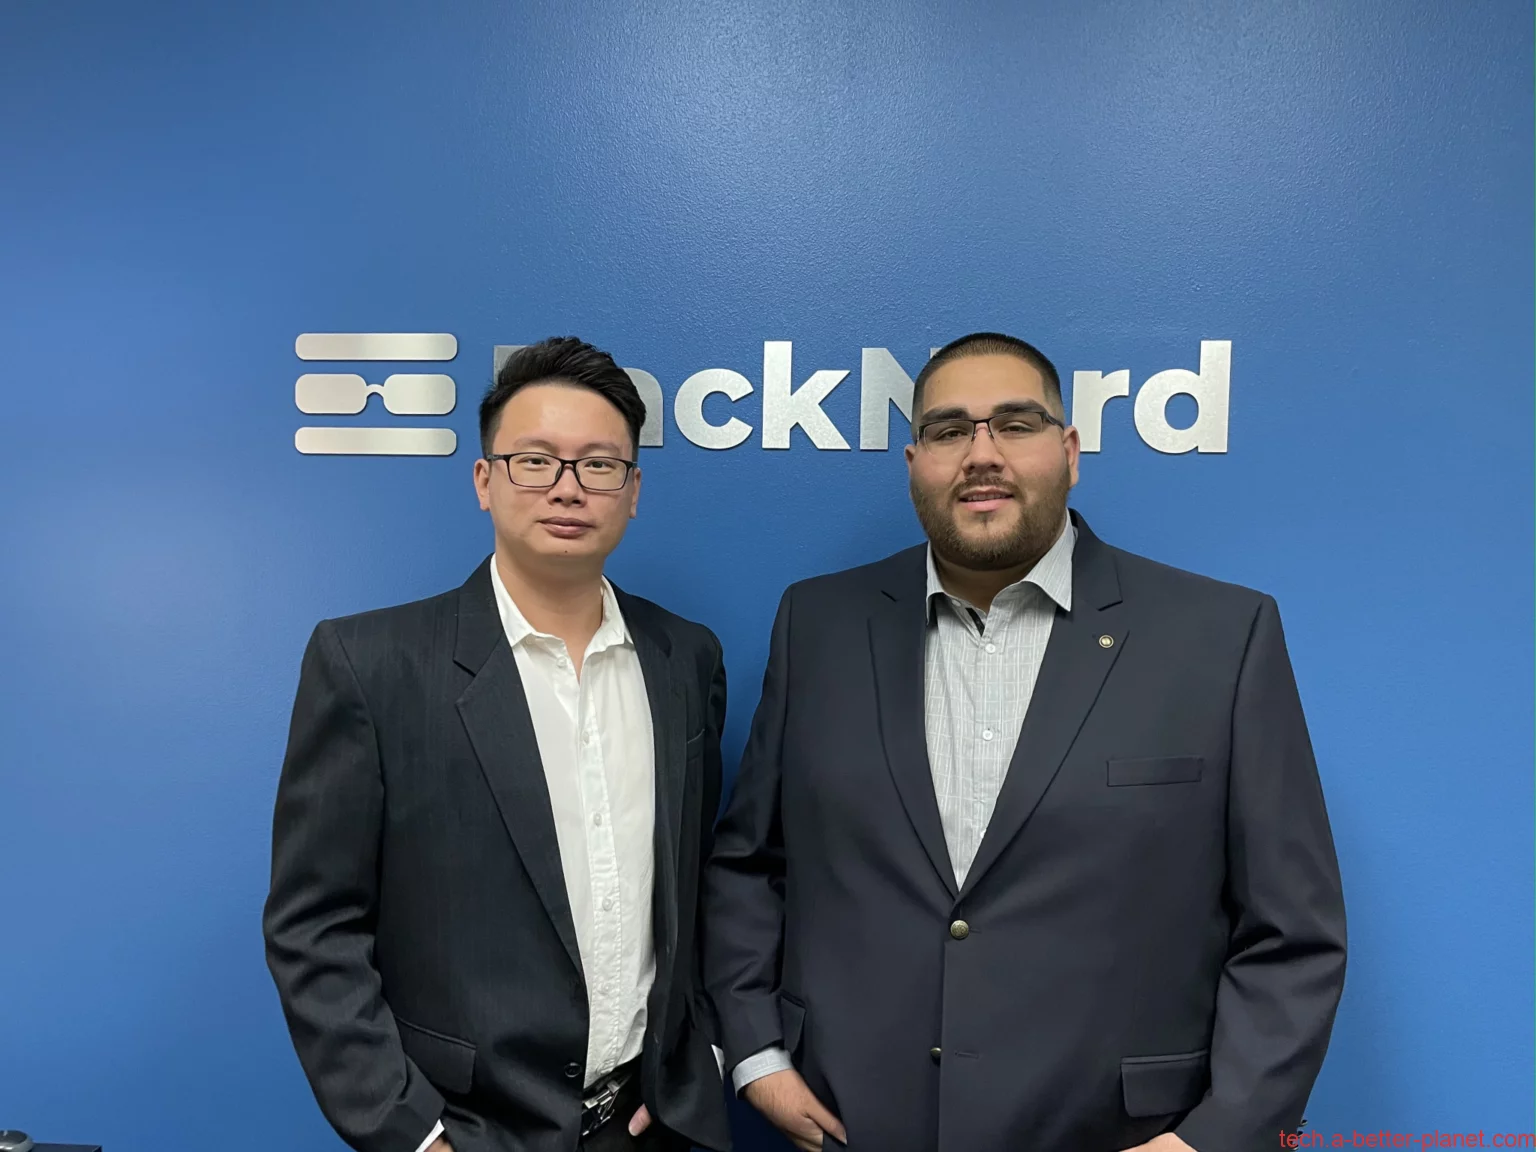 RN老板接受采访 – Racknerd CEO, Dustin B. Cisneros and VP of Sales Jinmao Xu